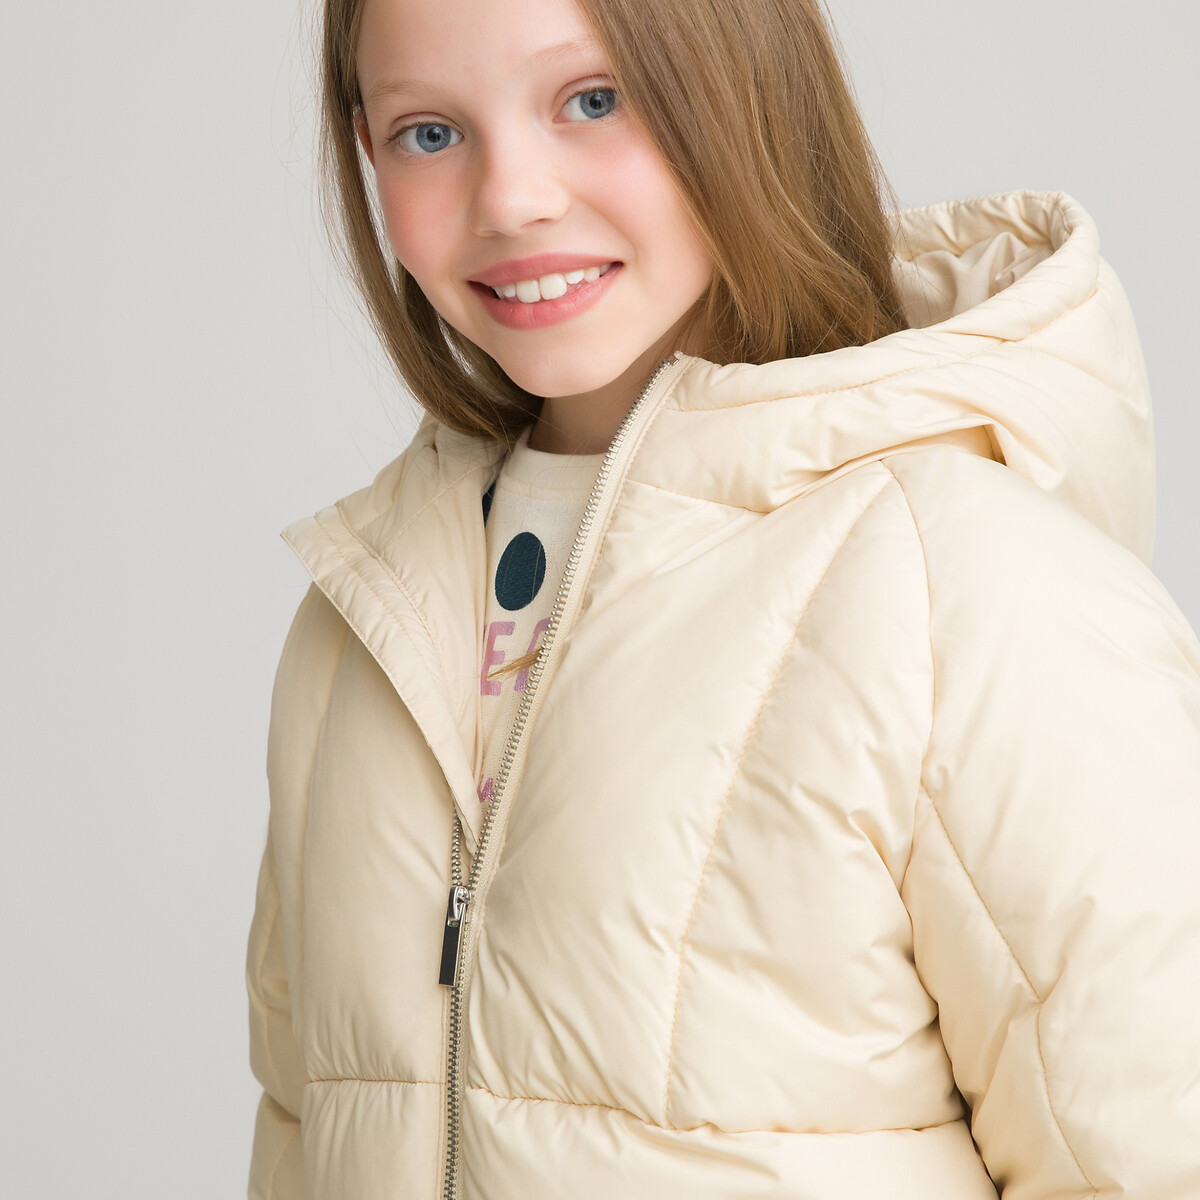 Куртка LaRedoute Стеганая с капюшоном теплая и пышная 3-14 лет 5 лет - 108 см бежевый, размер 5 лет - 108 см - фото 2